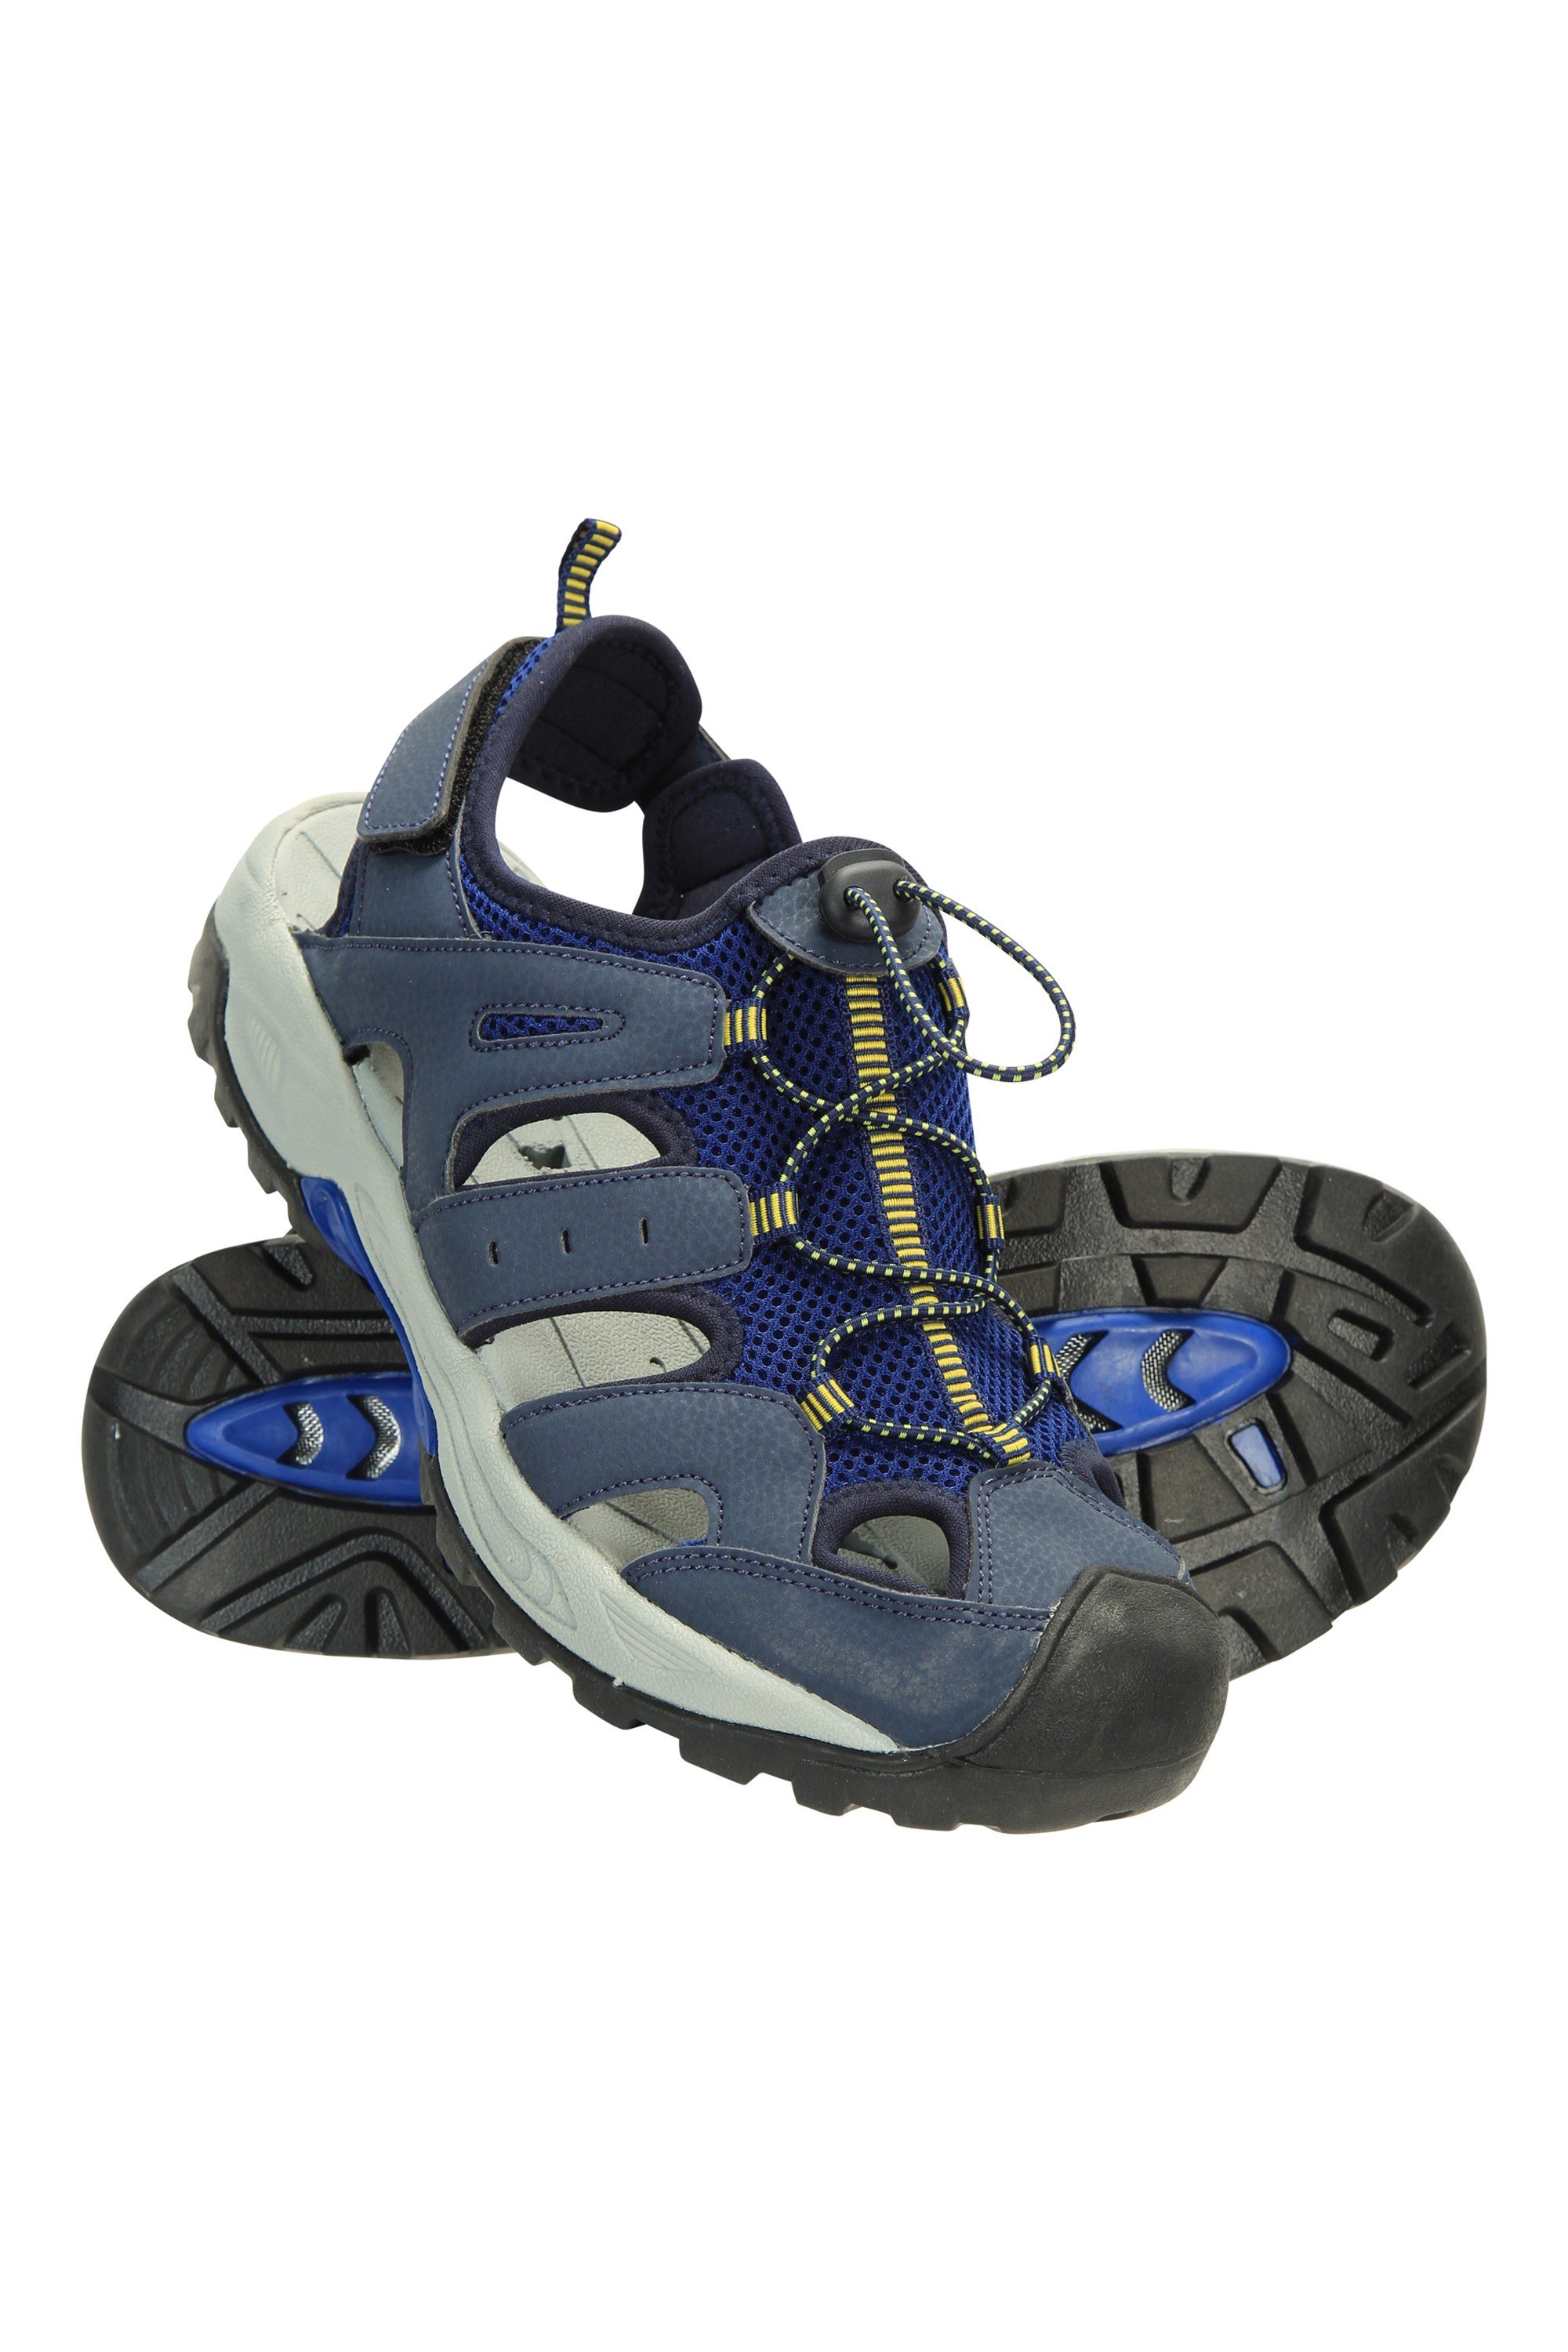 Mountain Warehouse Sandalias Bay para niños Ideal para Caminar Entresuela Viajar Sandalias de Neopreno Zapatos de Verano Ajustables y cómodos para niños 